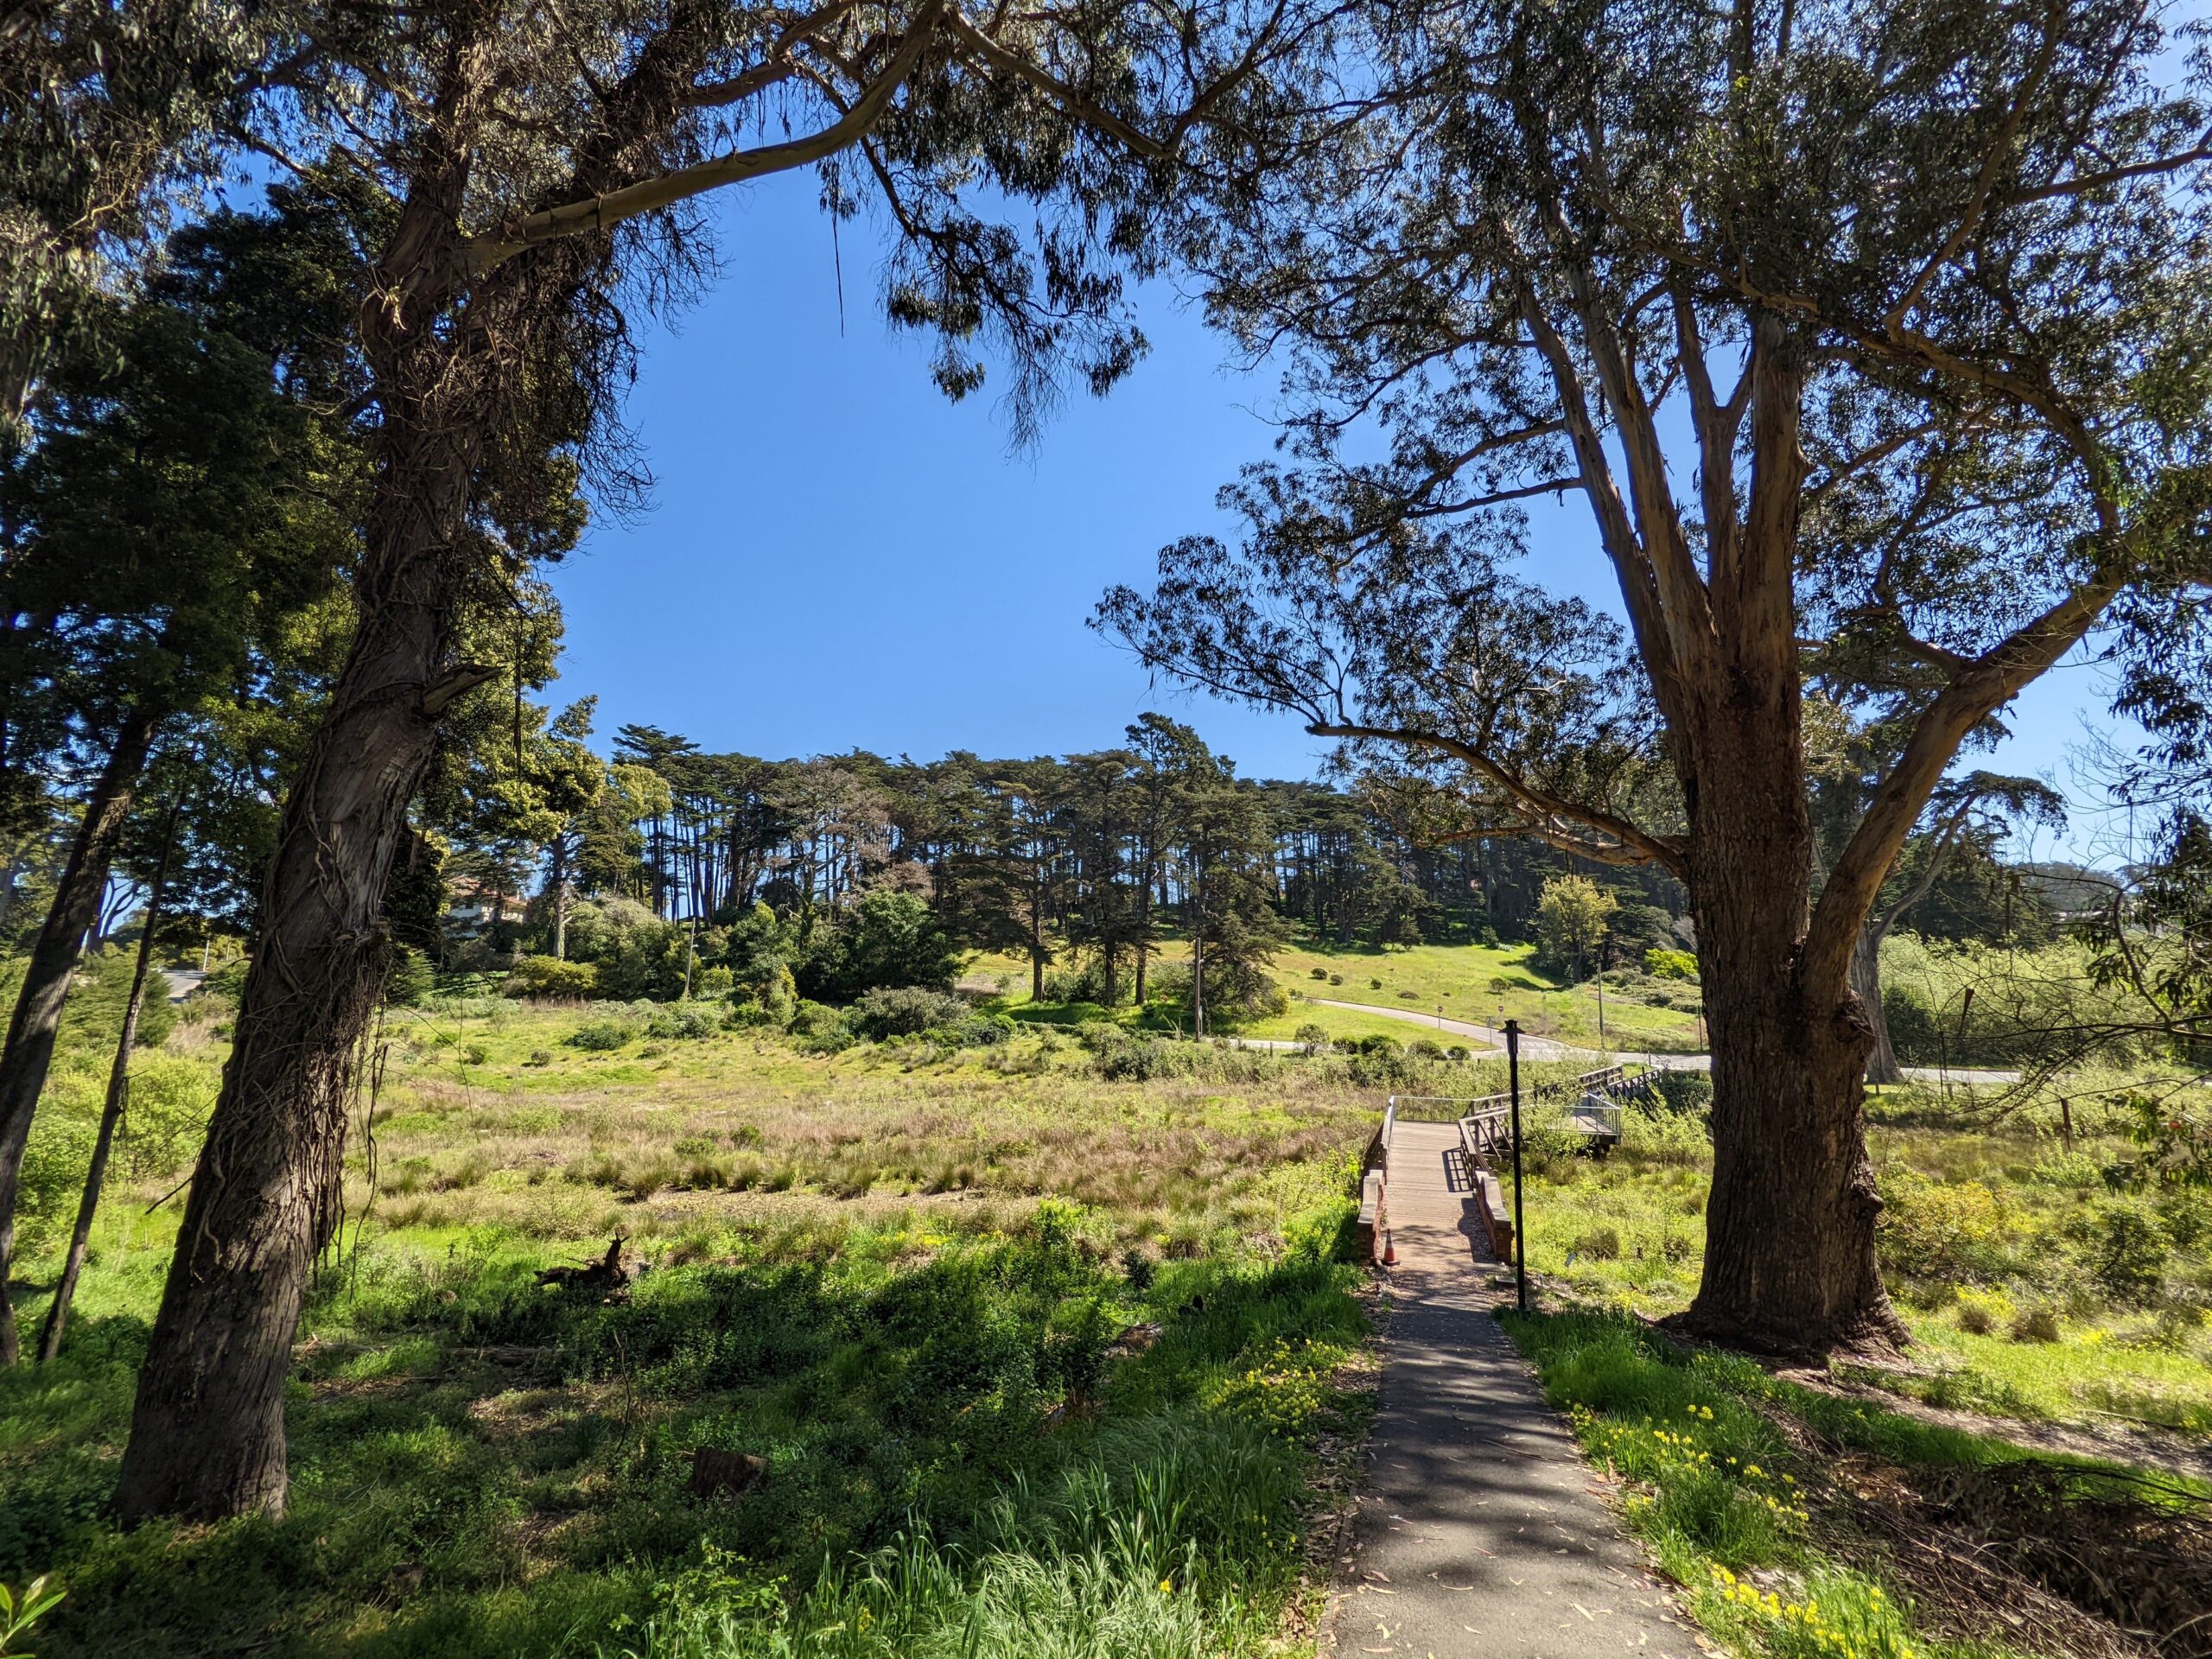 Walking path through woods on San Francisco Scavenger Hunt Walking Tour